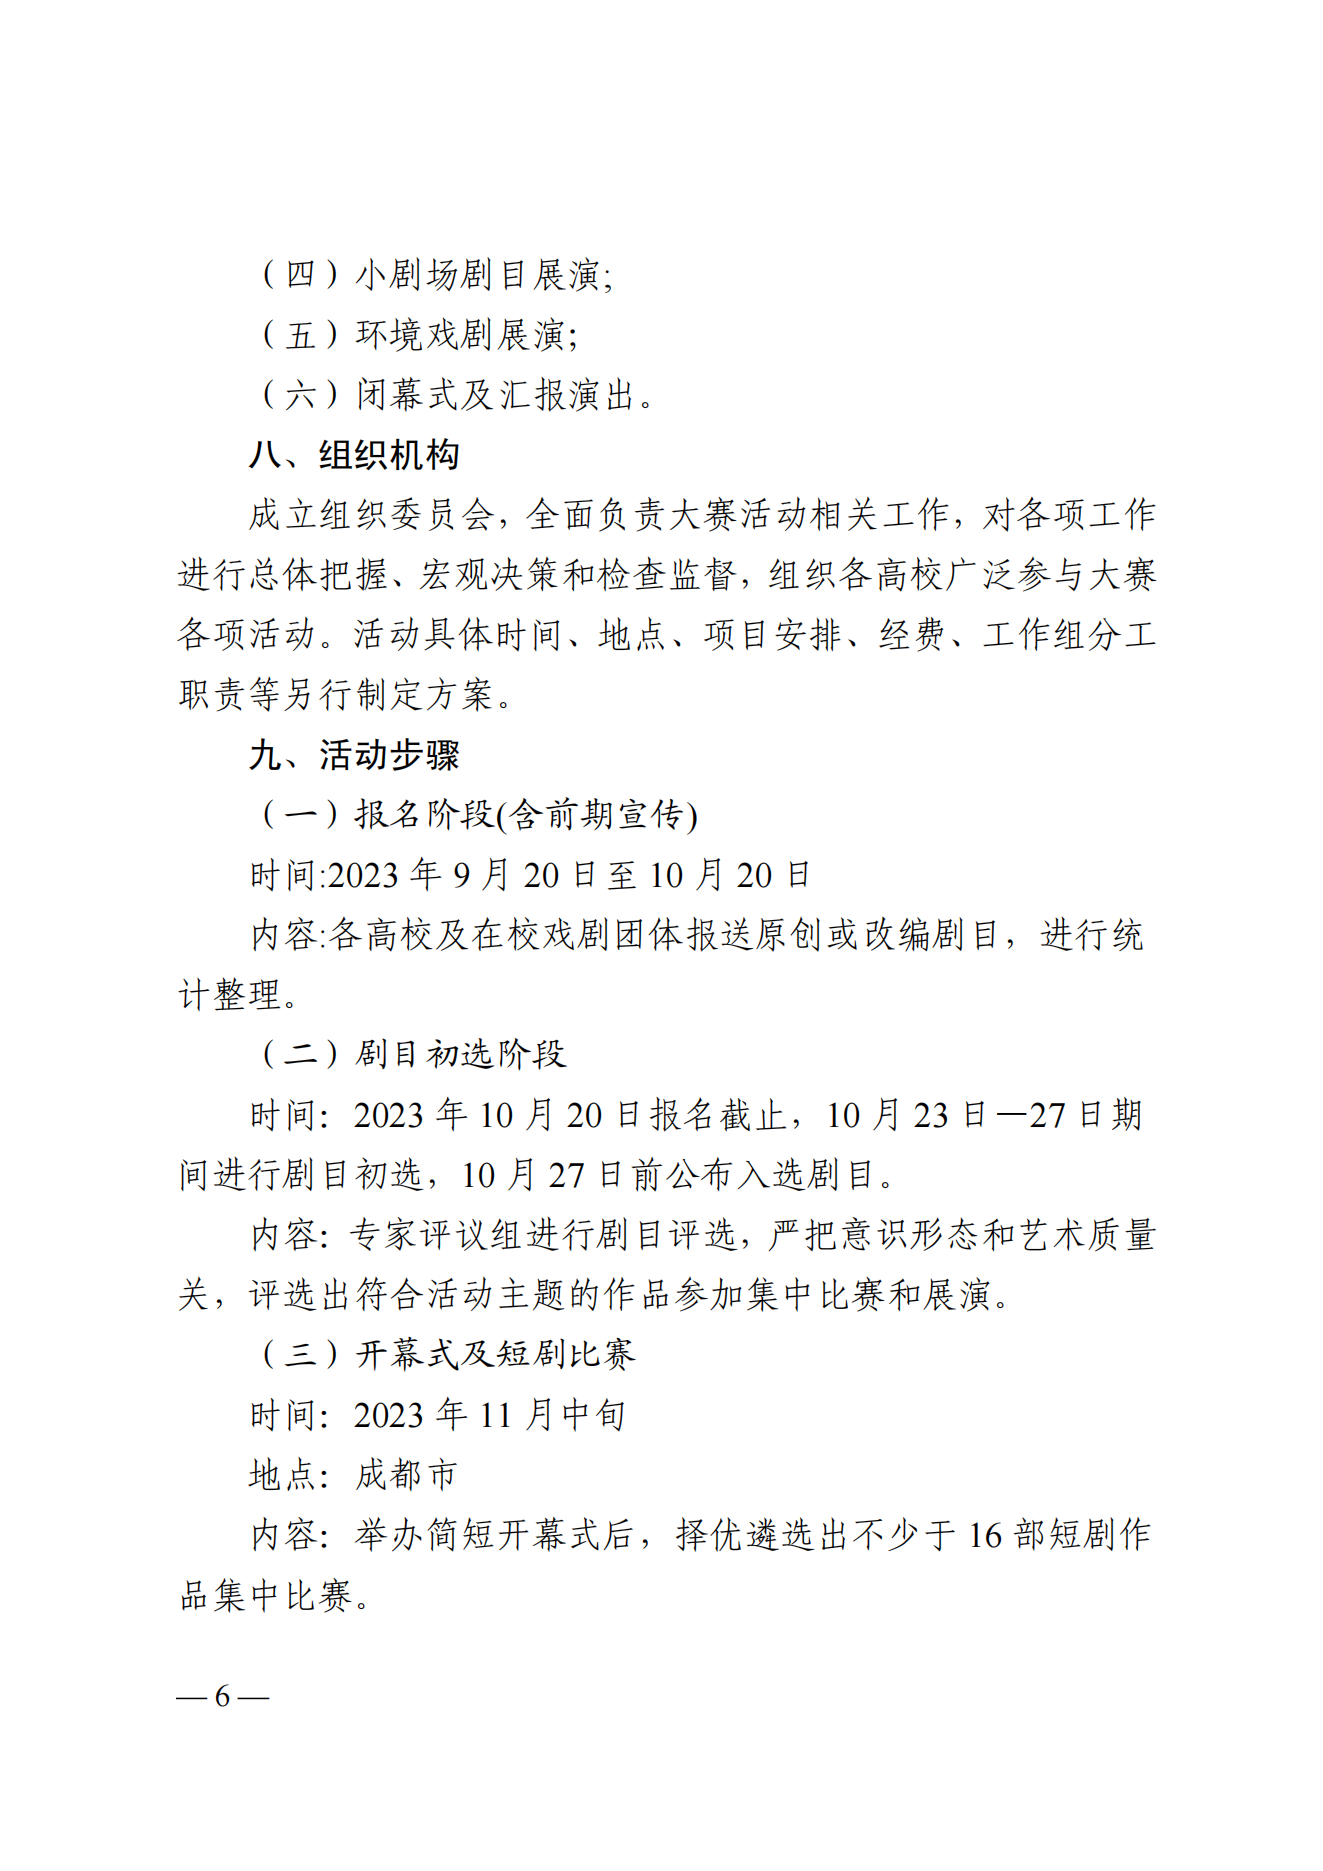 关于举办2023四川省大学生戏剧大赛暨大学生校园戏剧展演季的通知_05.png